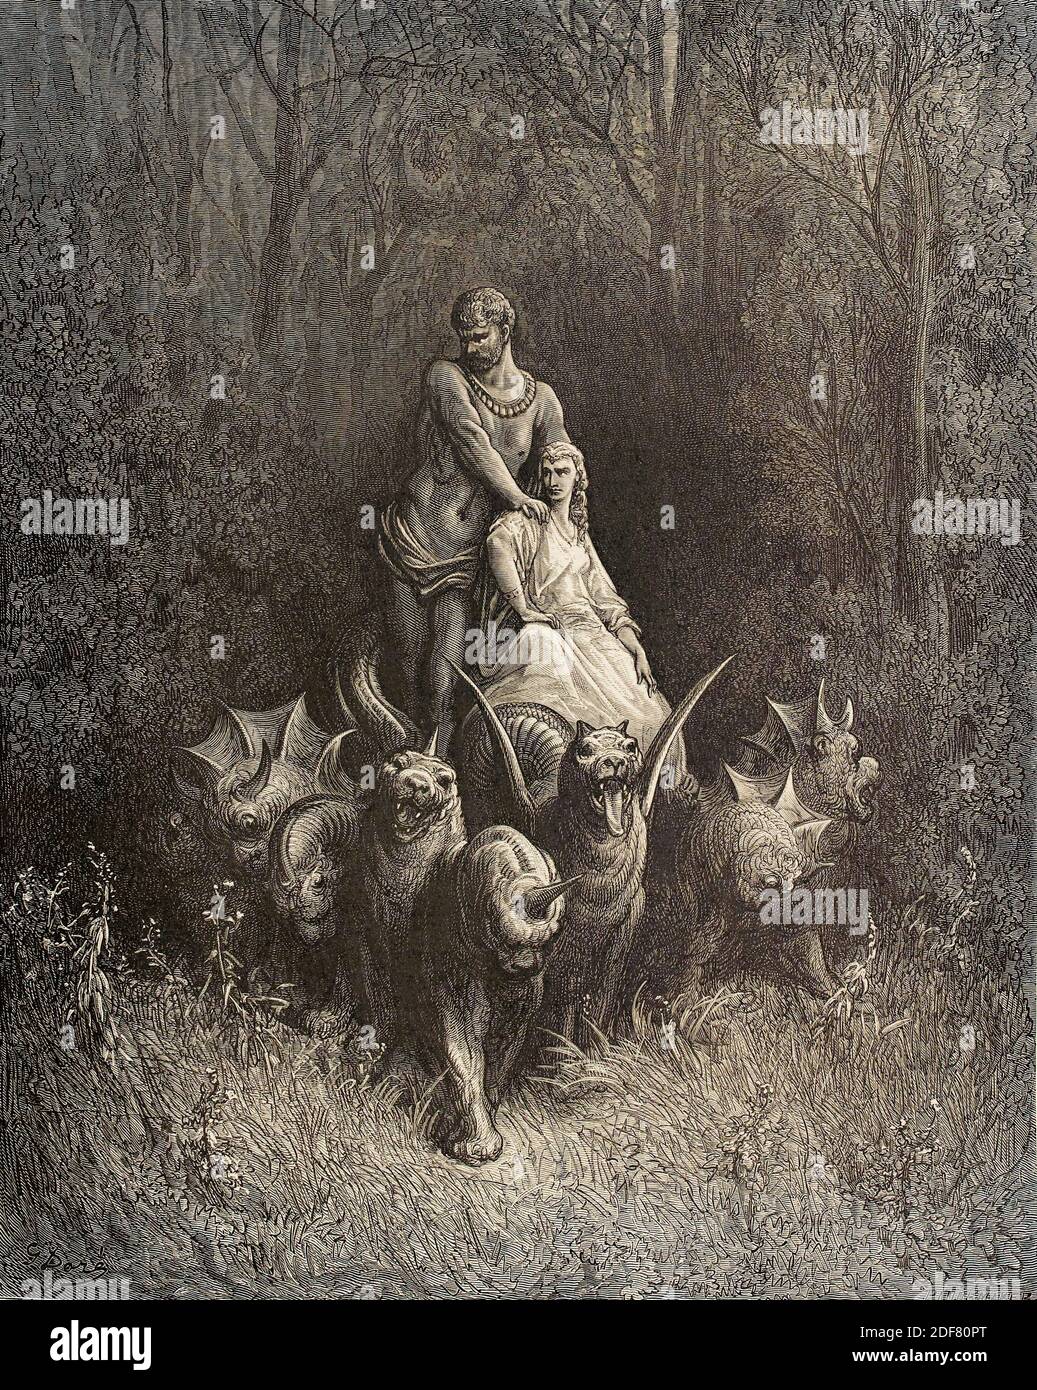 Dante - Divina Commedia - Purgatorio - Ilustración de Gustave Dorè - Canto XXXII - el gigante y la ramera Foto de stock